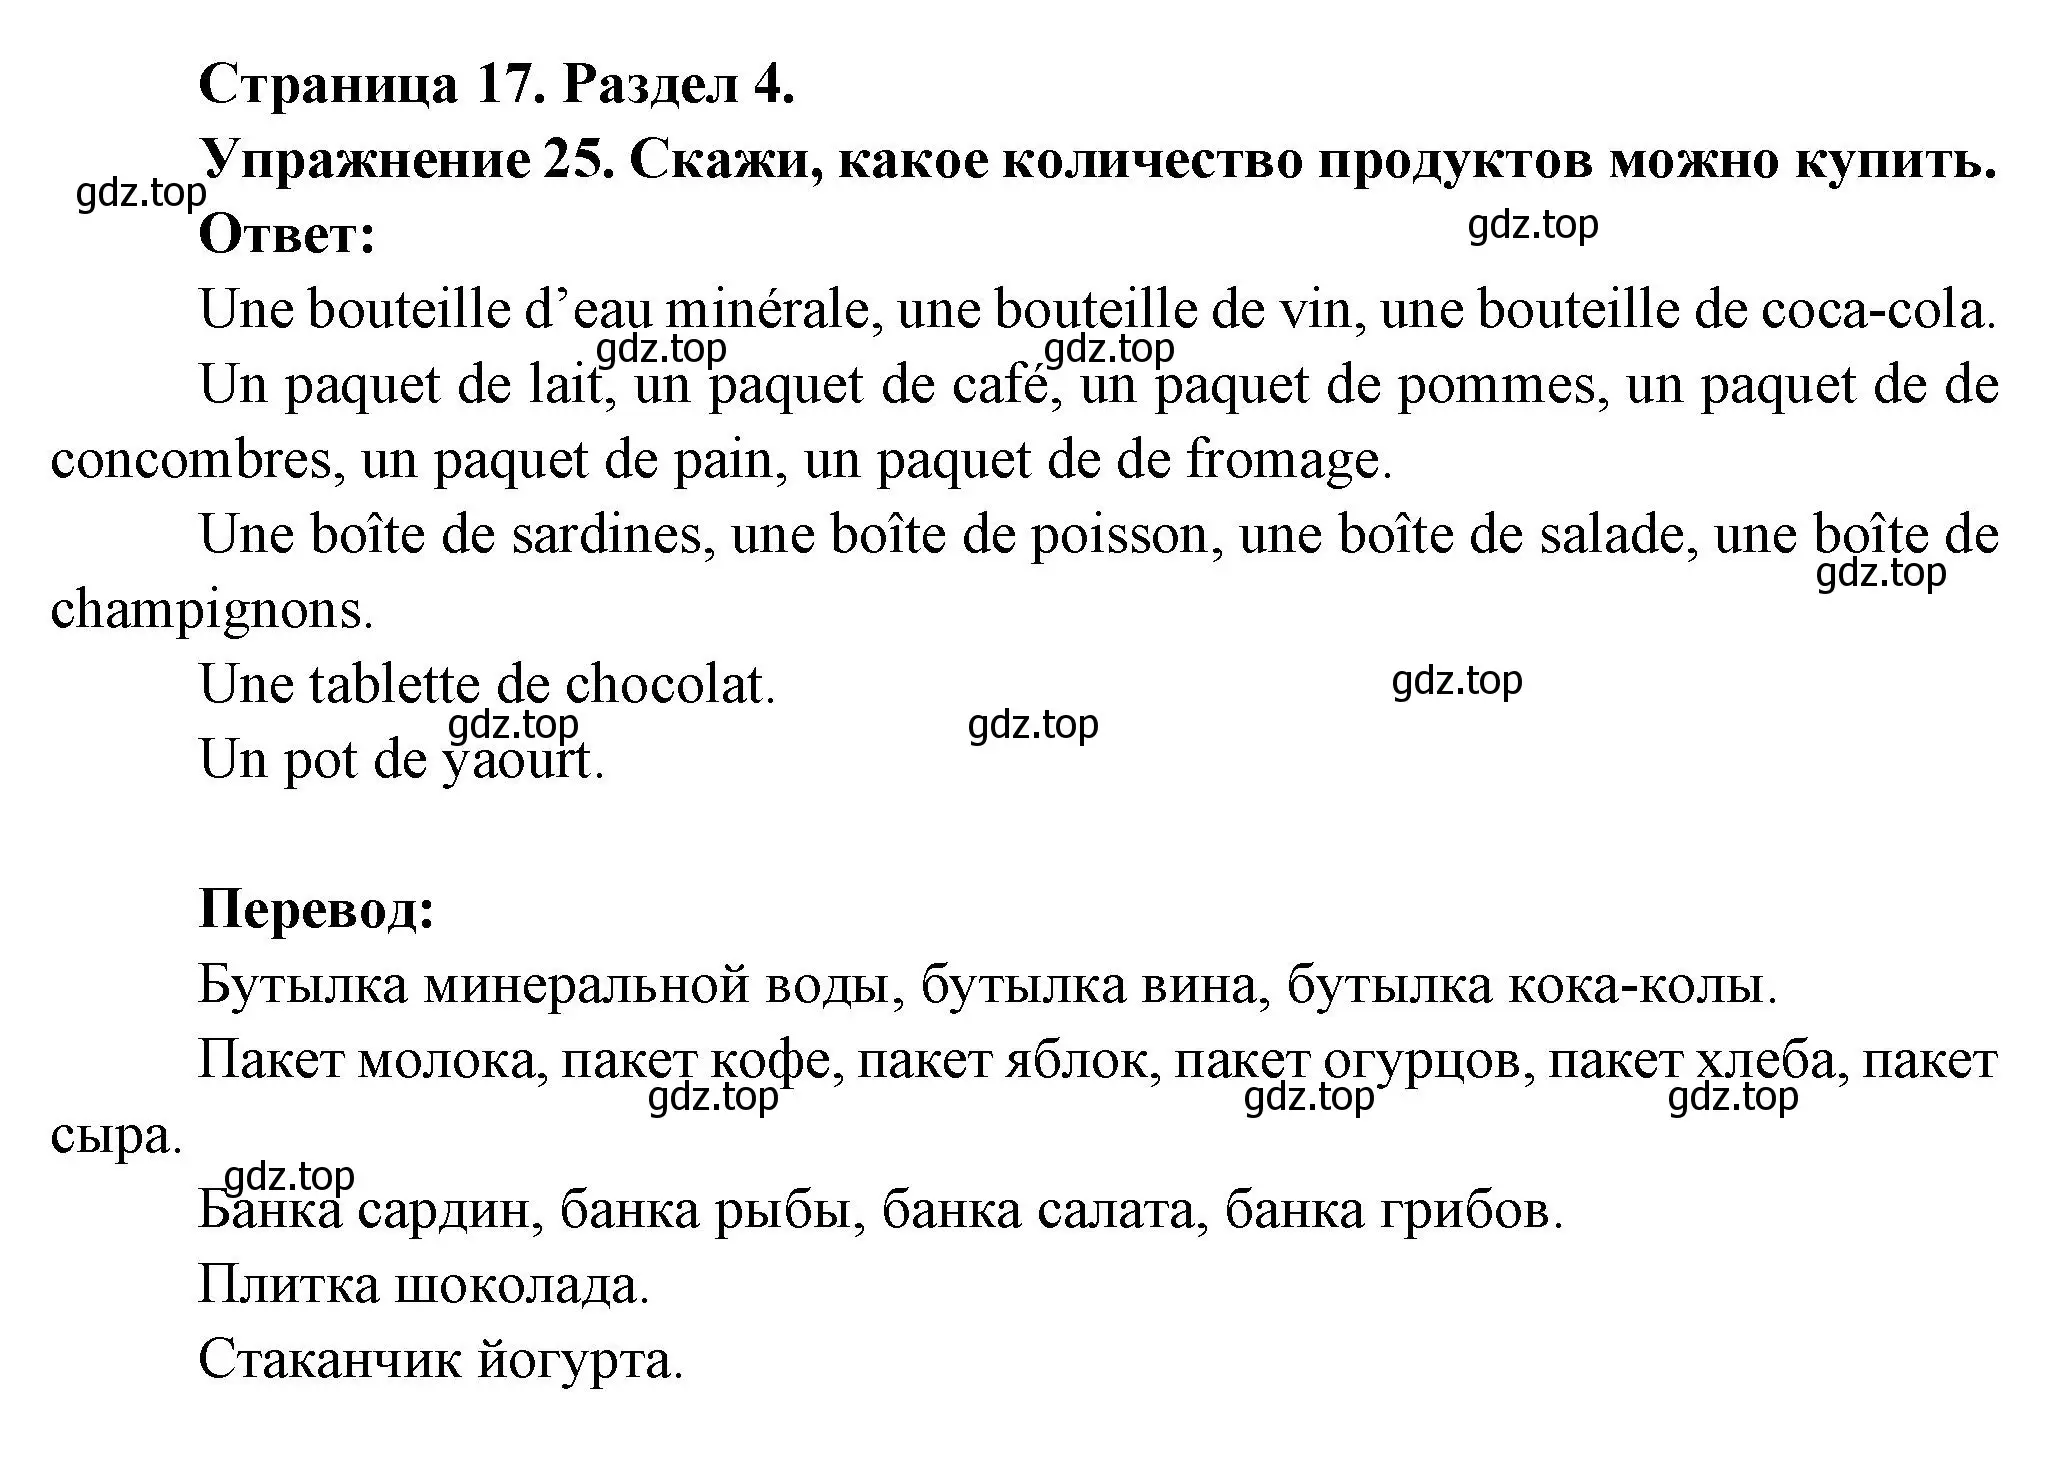 Решение номер 25 (страница 17) гдз по французскому языку 5 класс Береговская, Белосельская, учебник 2 часть